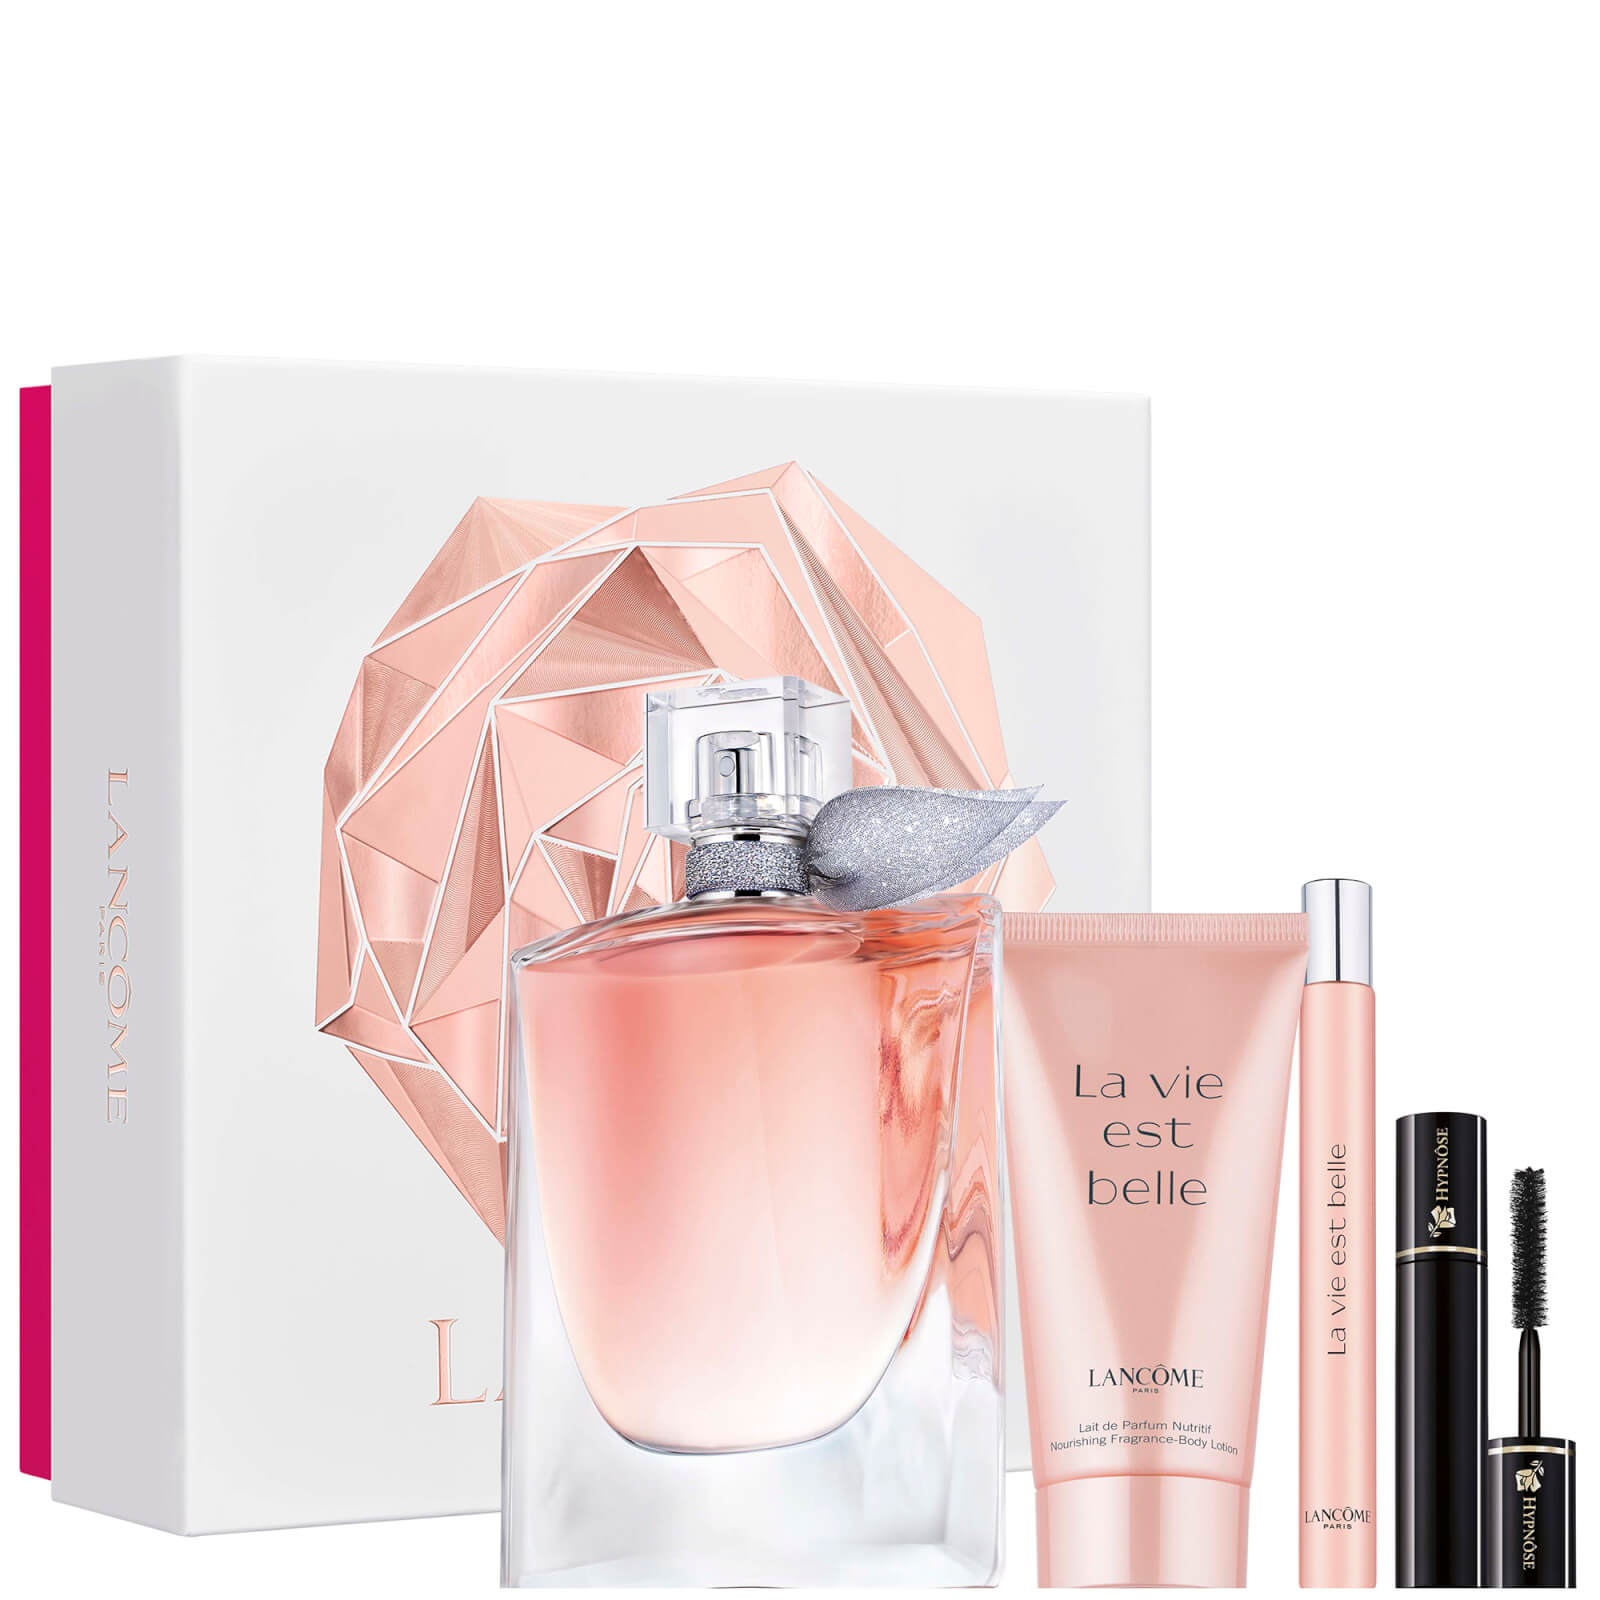 Lancôme La Vie Est Belle Eau De Parfum 100ml Holiday Gift Set For Her (Worth £127.00)